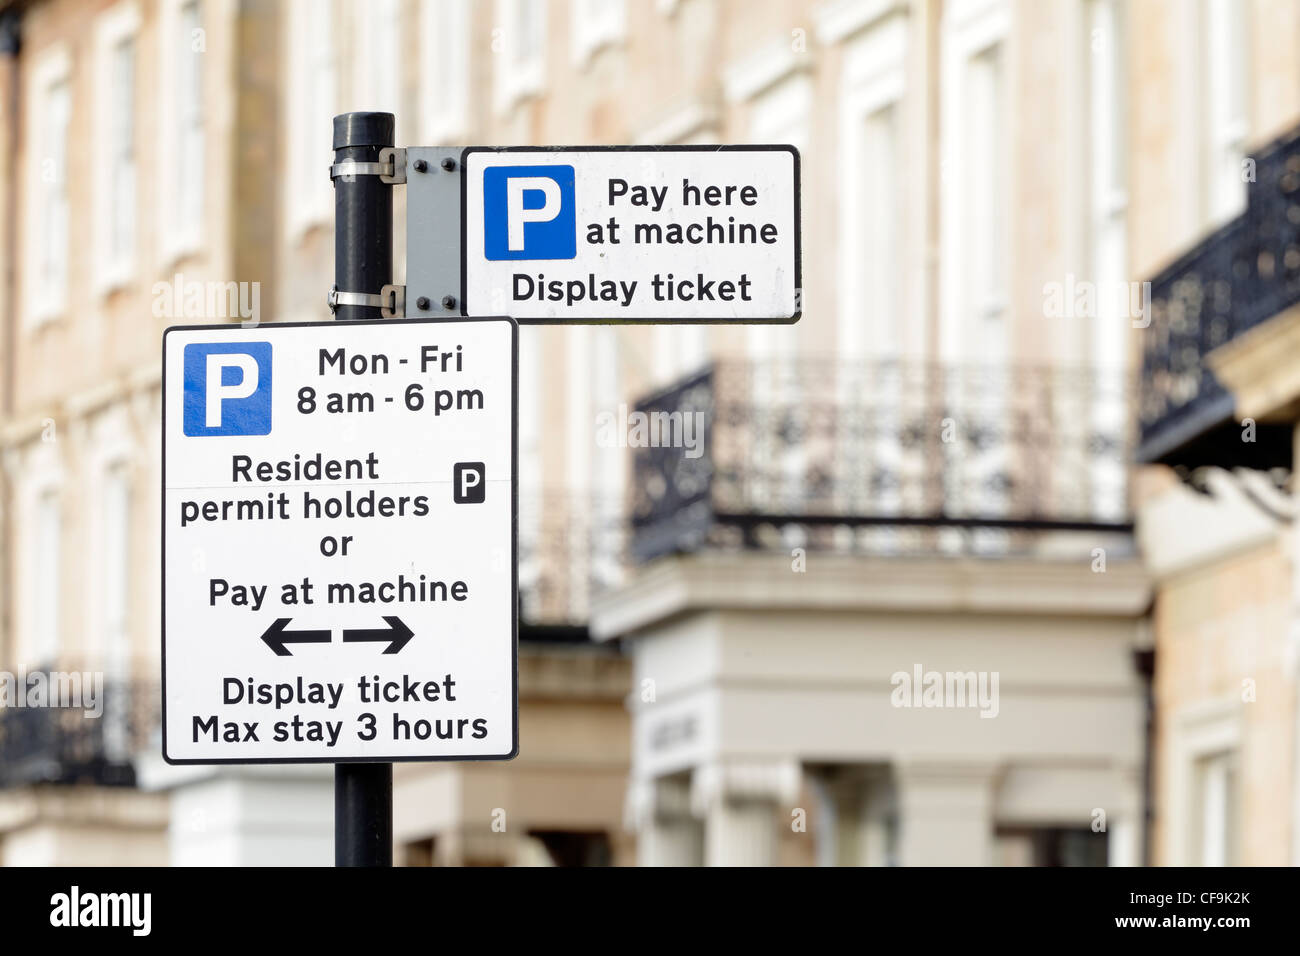 Los titulares de permiso de residencia y pagar en el aparcamiento de la máquina signos, Glasgow, Escocia, Reino Unido Foto de stock